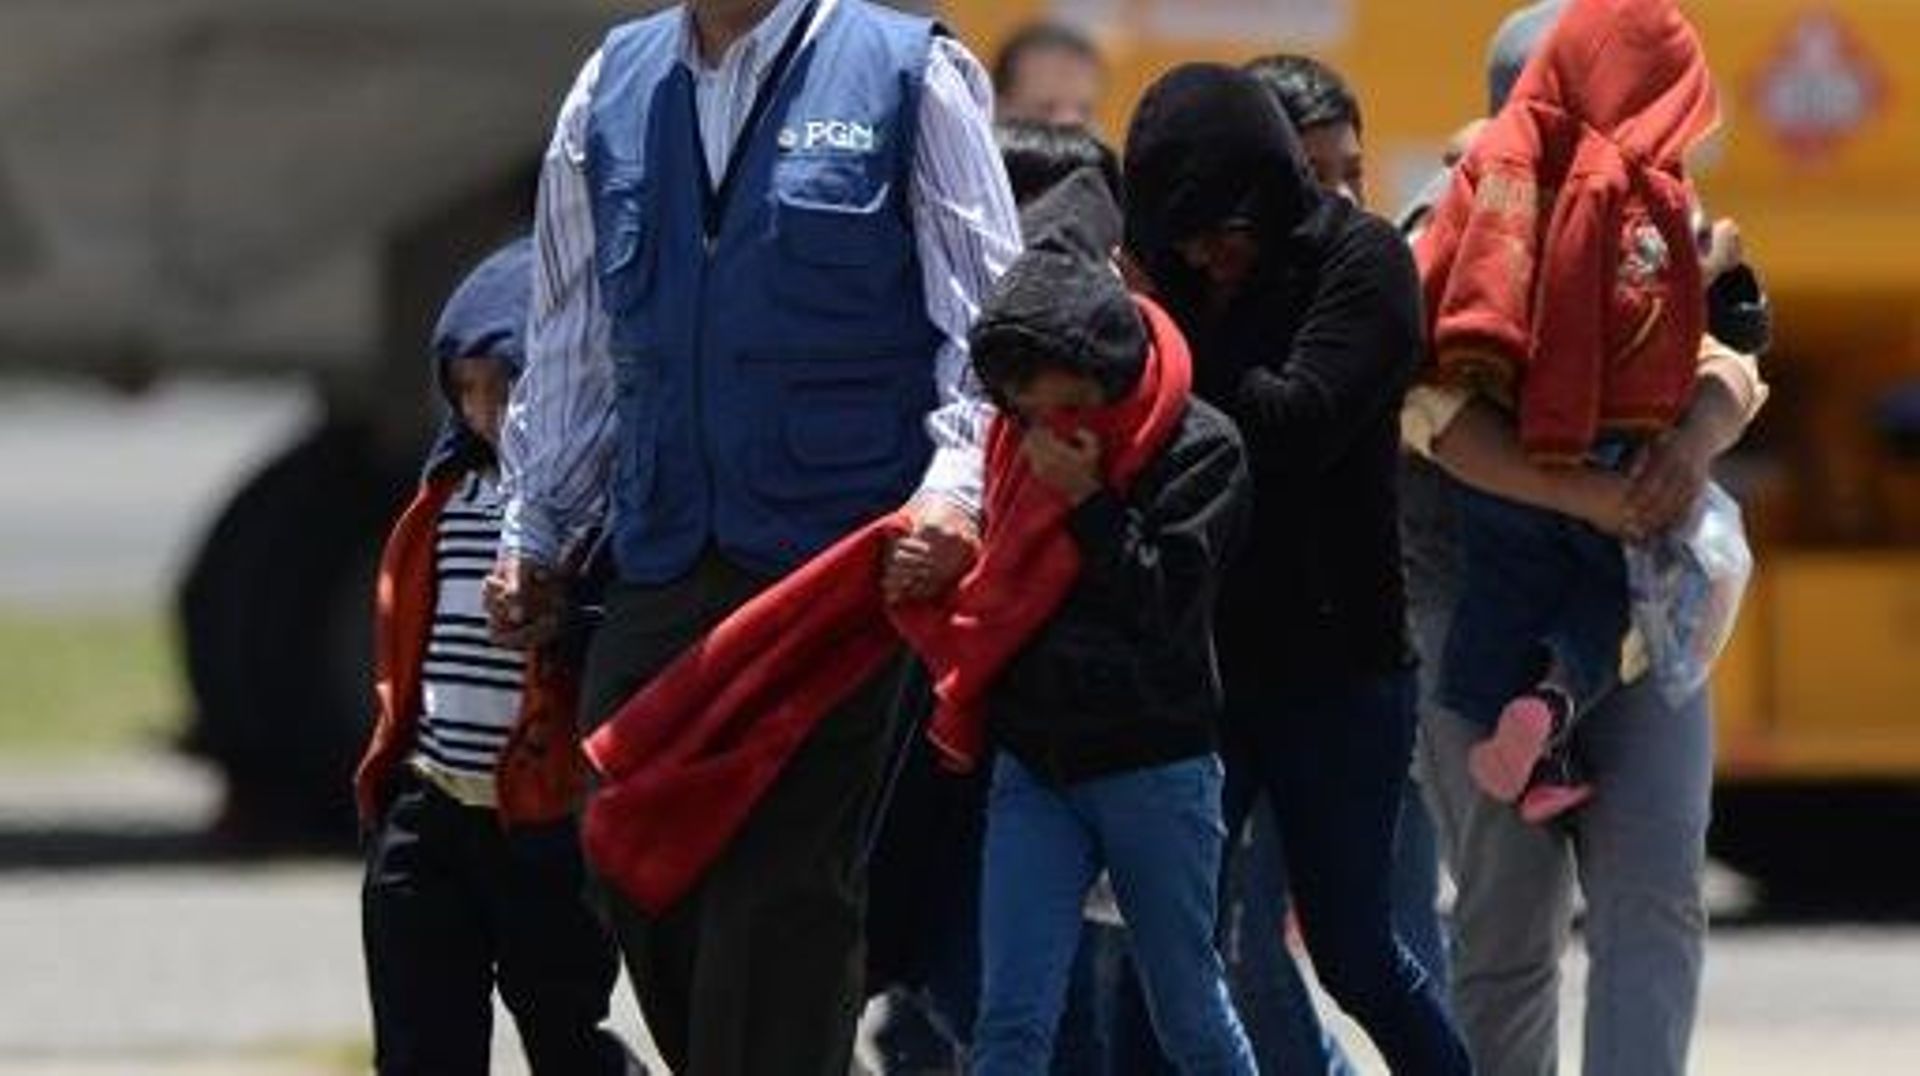 Un groupe de jeunes enfants, entrés clandestinement aux Etats-Unis, ont été renvoyés au Guatemala où ils viennent d'arriver le 22 juillet 2014 